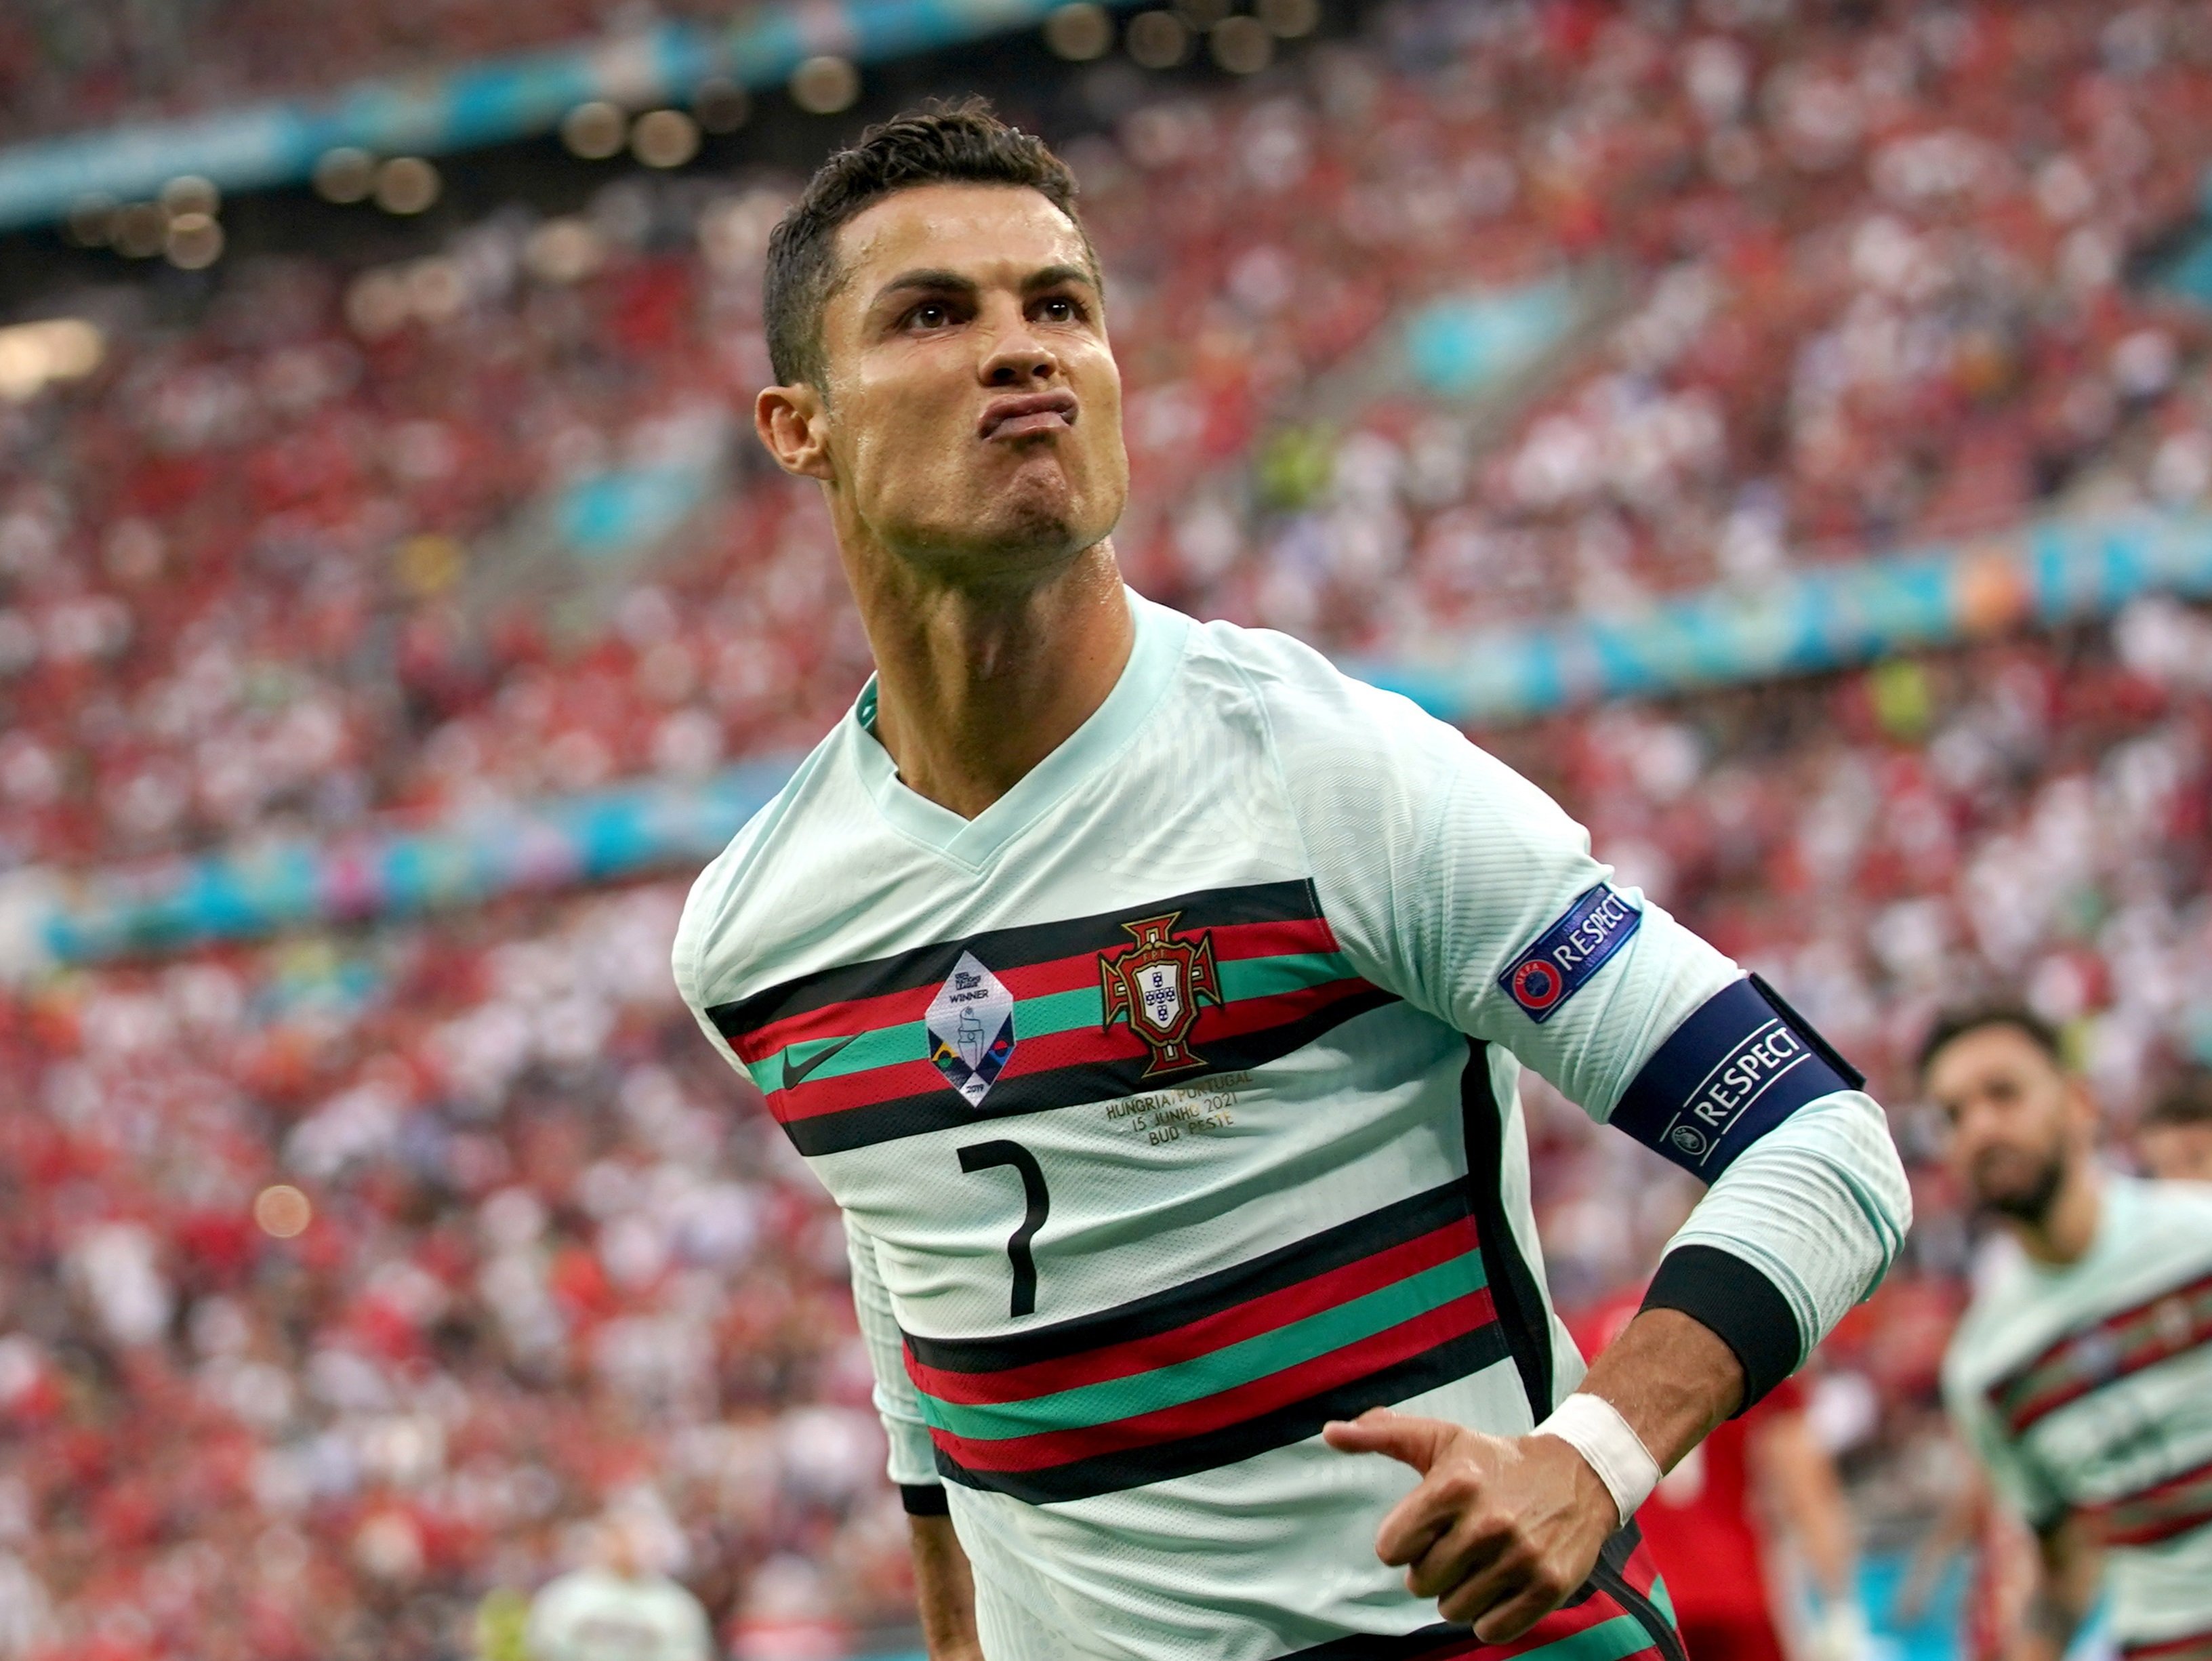 El futur de Cristiano Ronaldo: nostàlgia, fantasia, sorpresa o decepció